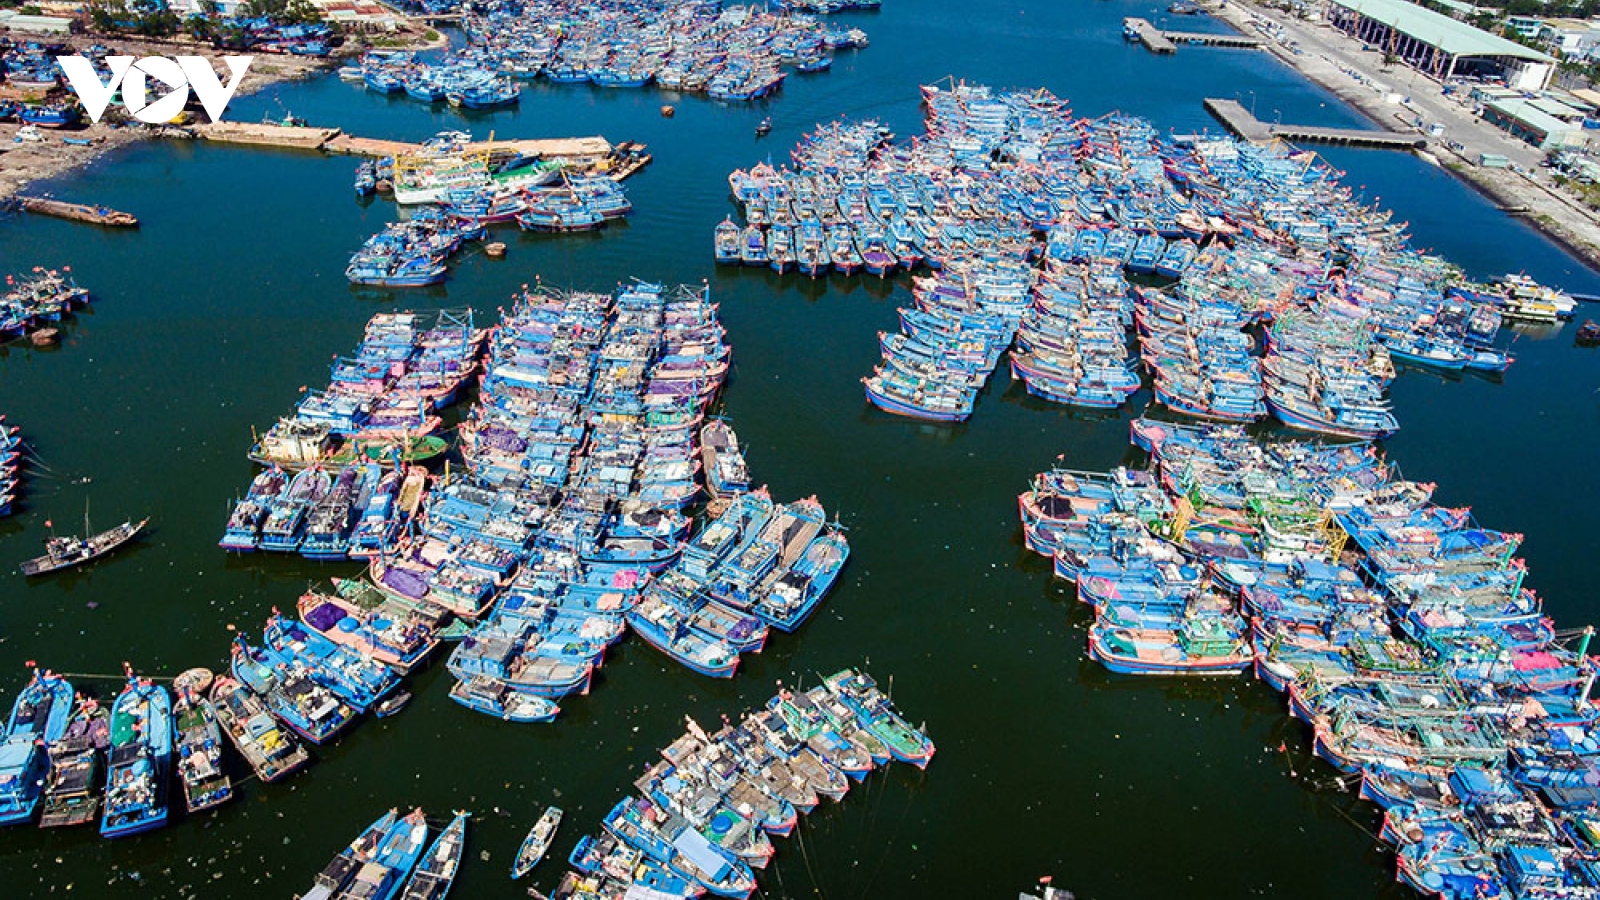 Năm 2050 có 184 cảng cá, 160 khu neo đậu tránh trú bão cho tàu cá